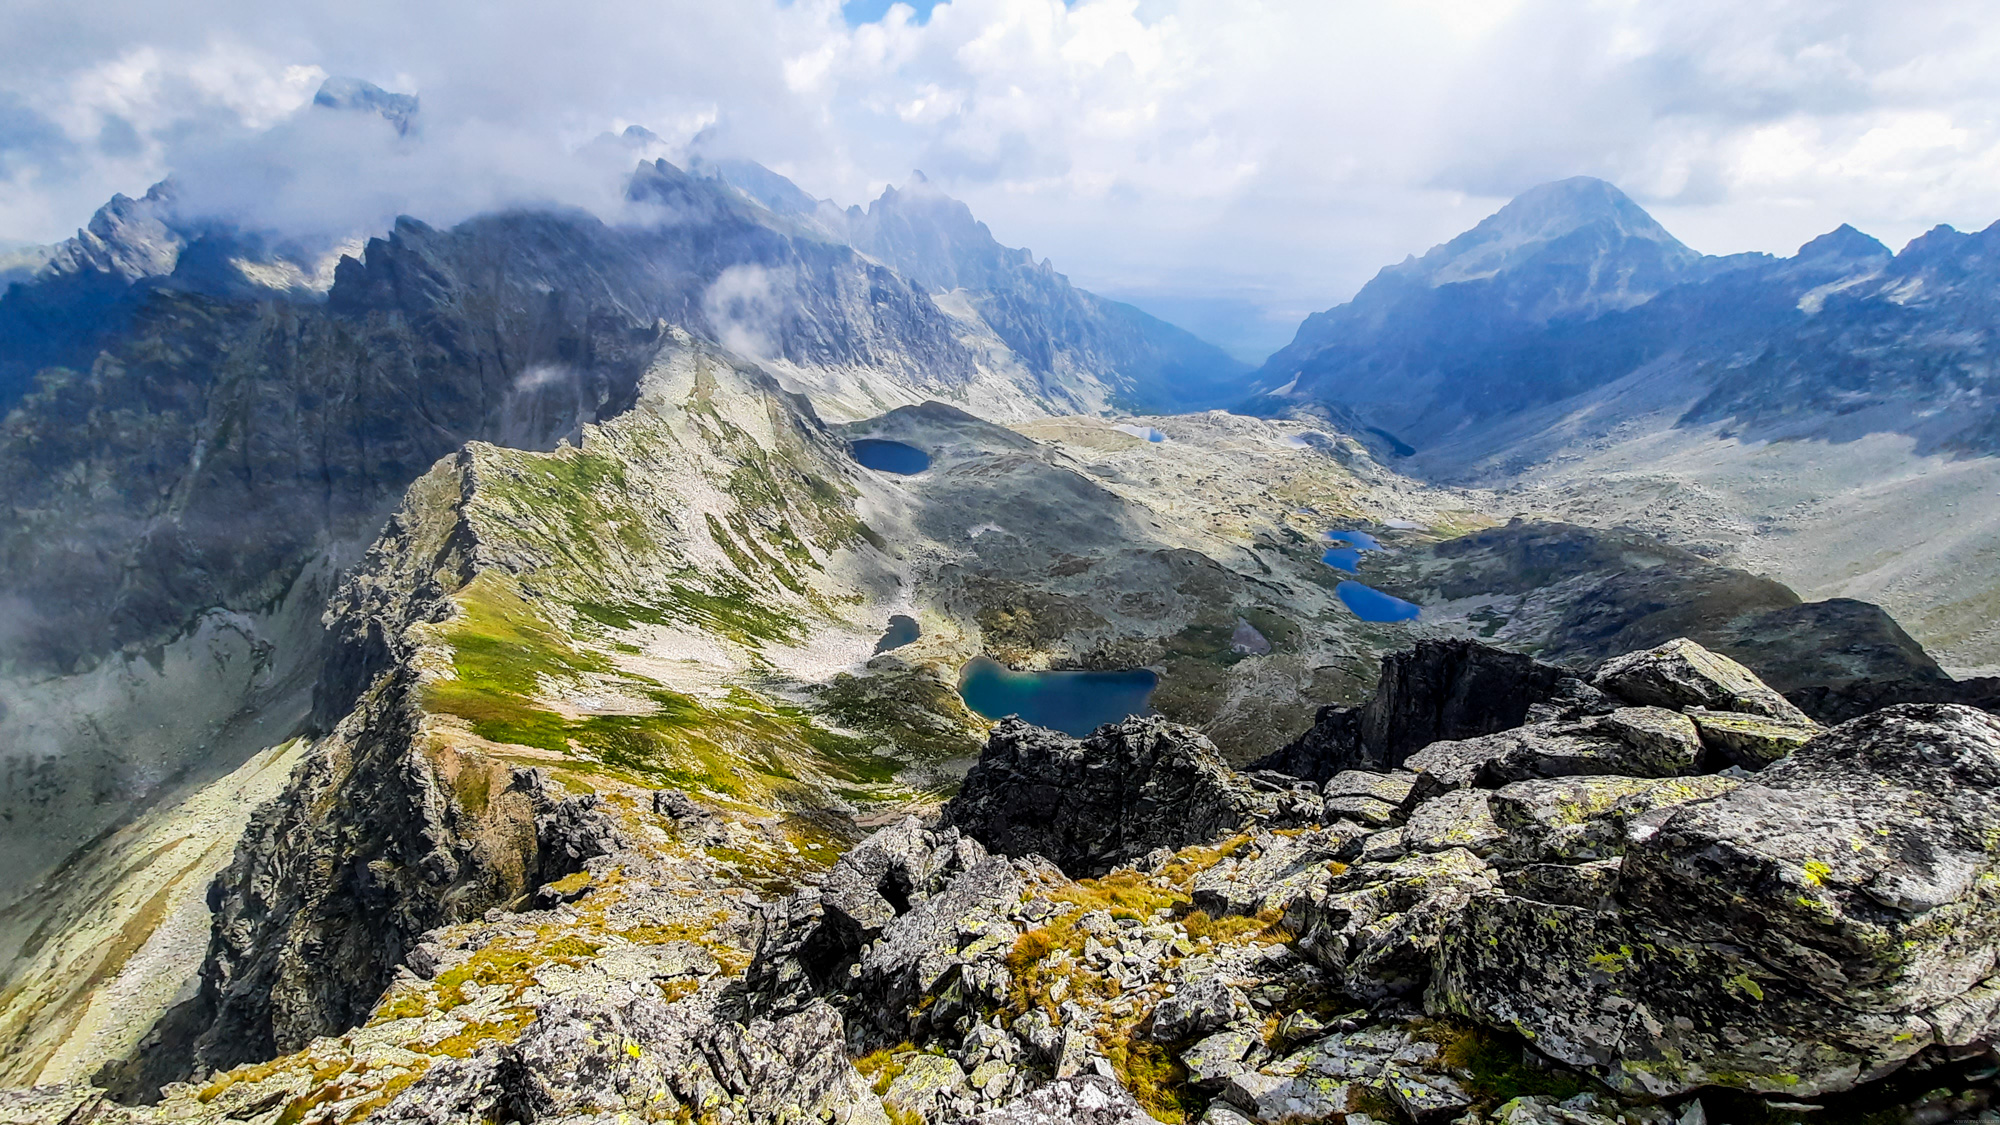 Veľká Studená dolina, hlavný hrebeň Tatier k Malému Javorovému štítu nad Rovienkovou kotlinou.